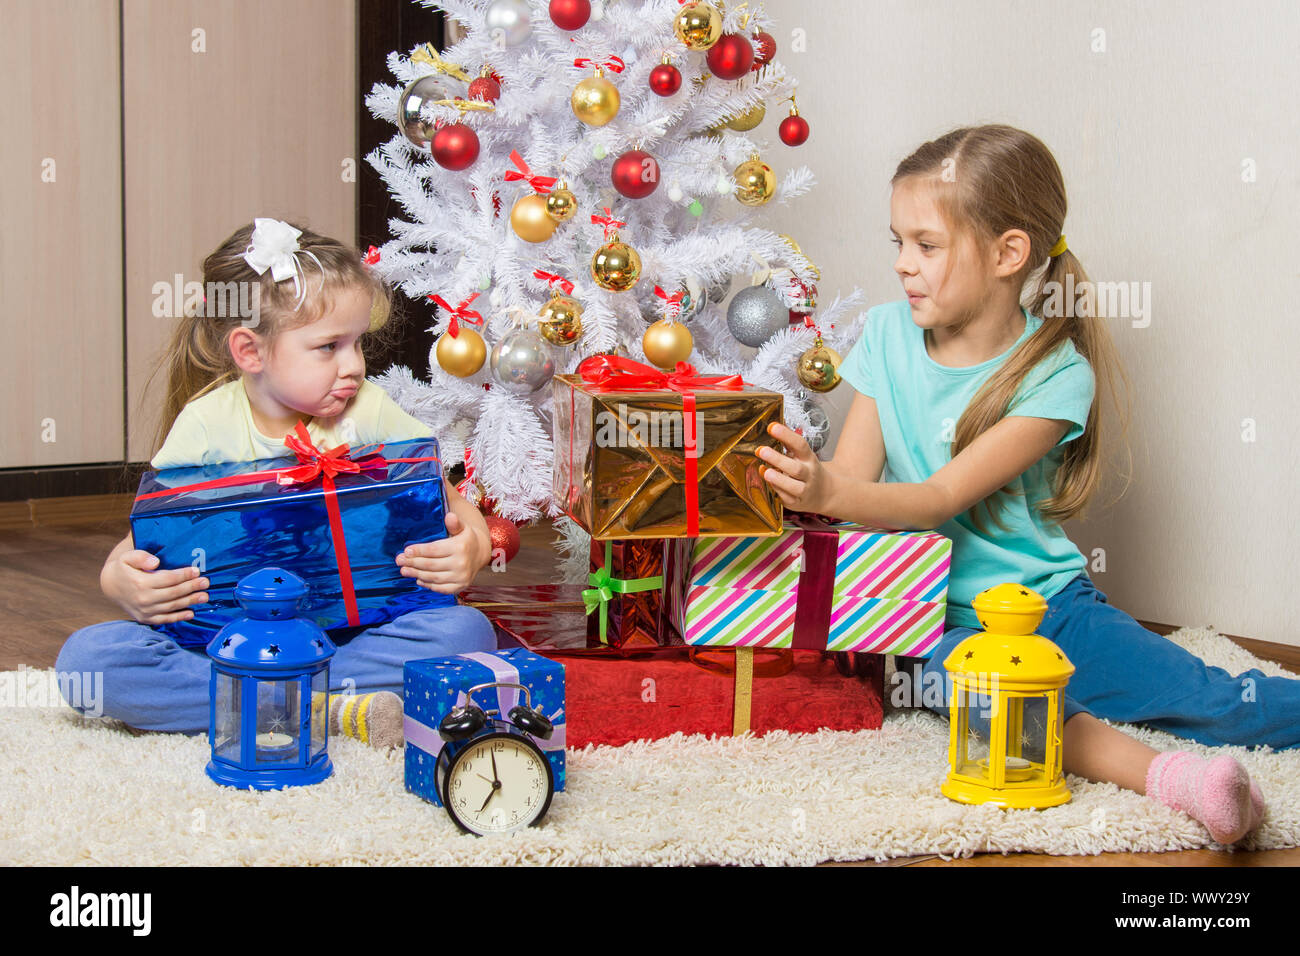 Zwei Mädchen teilen präsentiert Neujahr Geschenke am Weihnachtsbaum Stockfoto